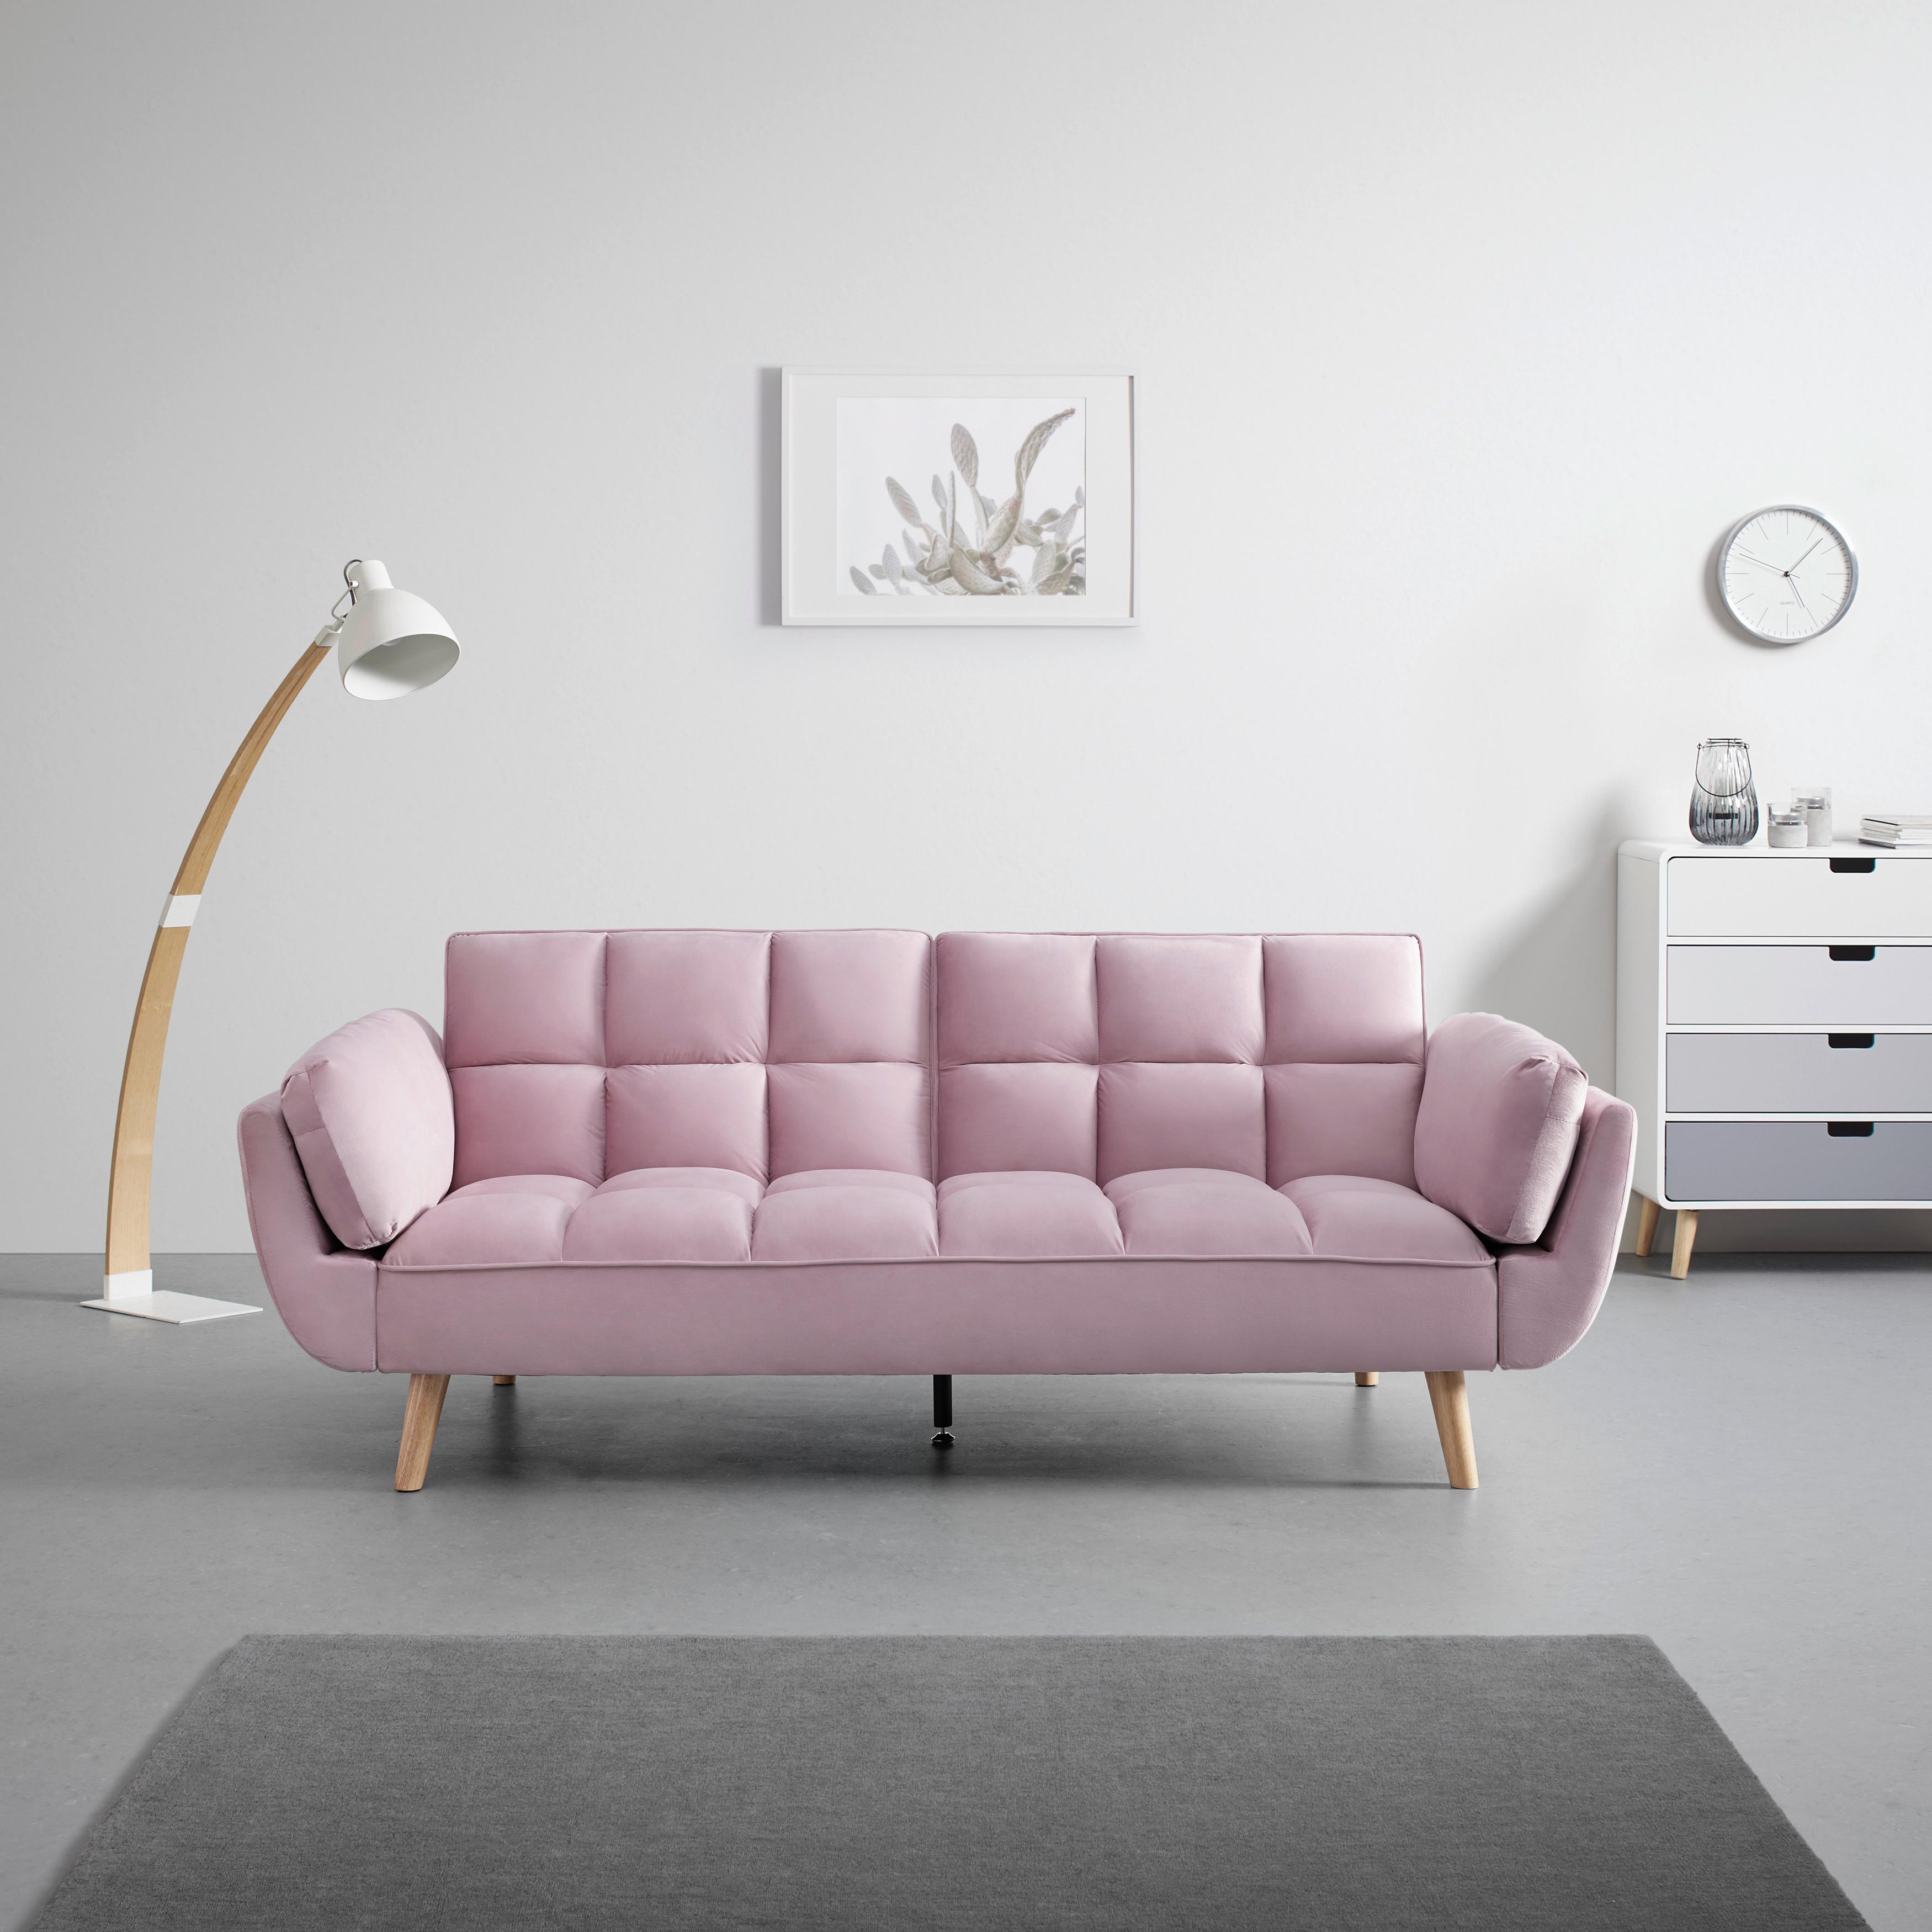 Zofa S Posteljno Funkcijo Cora - naravna/roza, Moderno, tekstil/les (212/82/92cm) - Bessagi Home